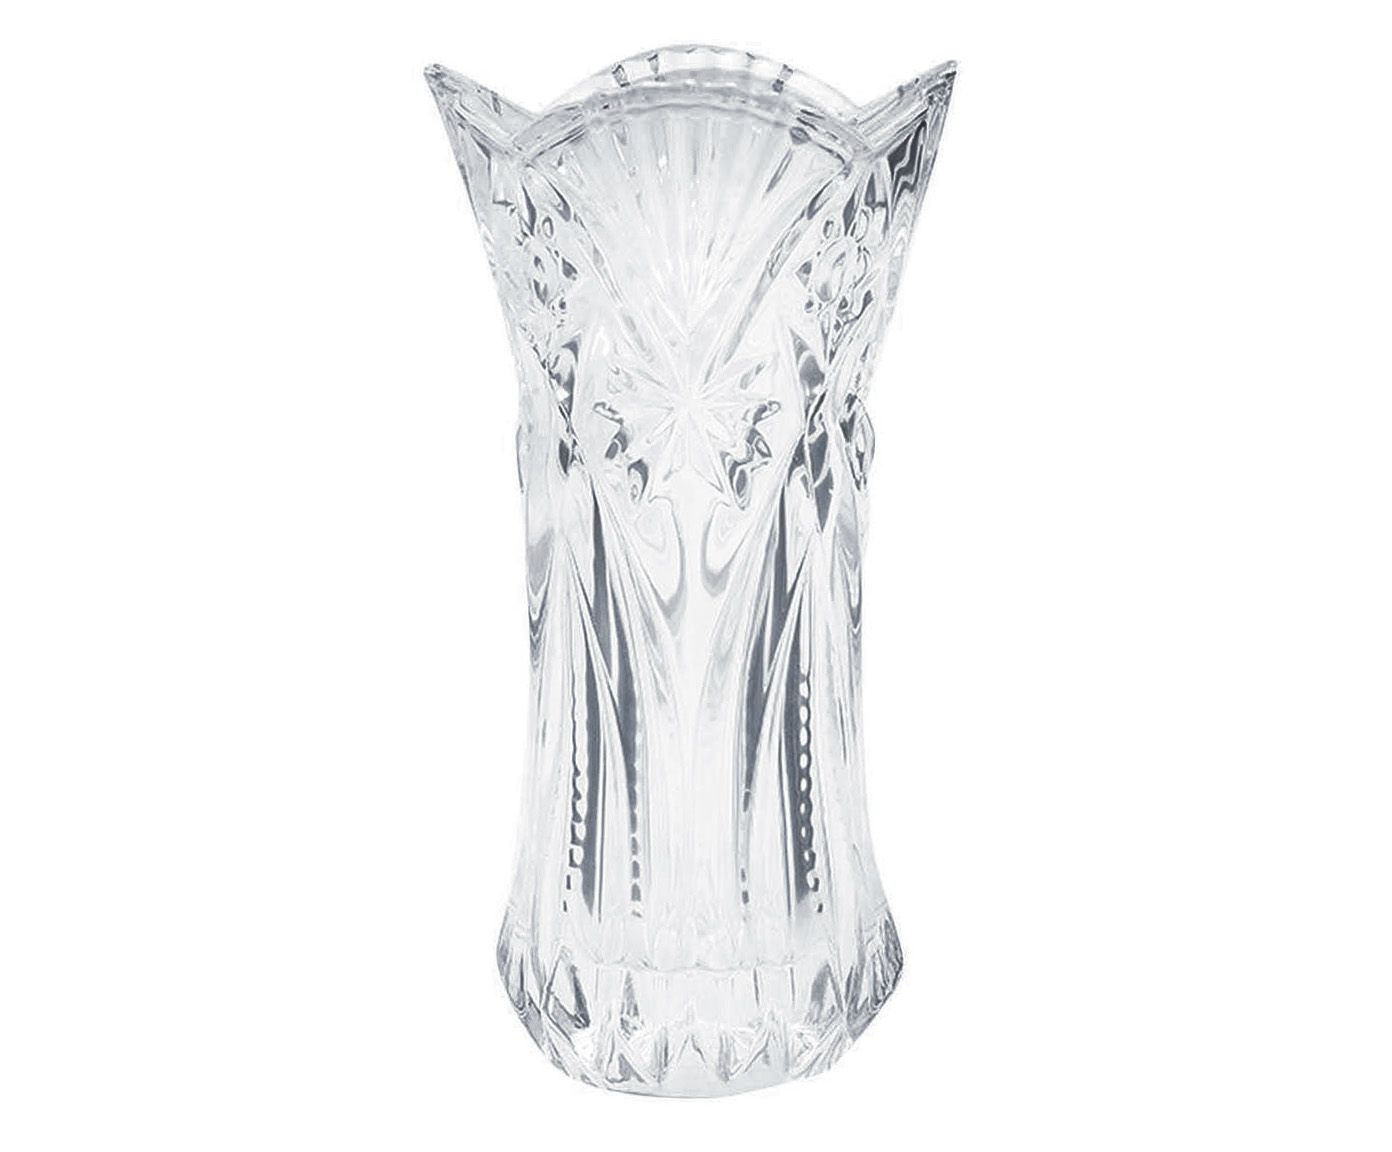 Vaso gemstone wolff - 28 cm | Westwing.com.br